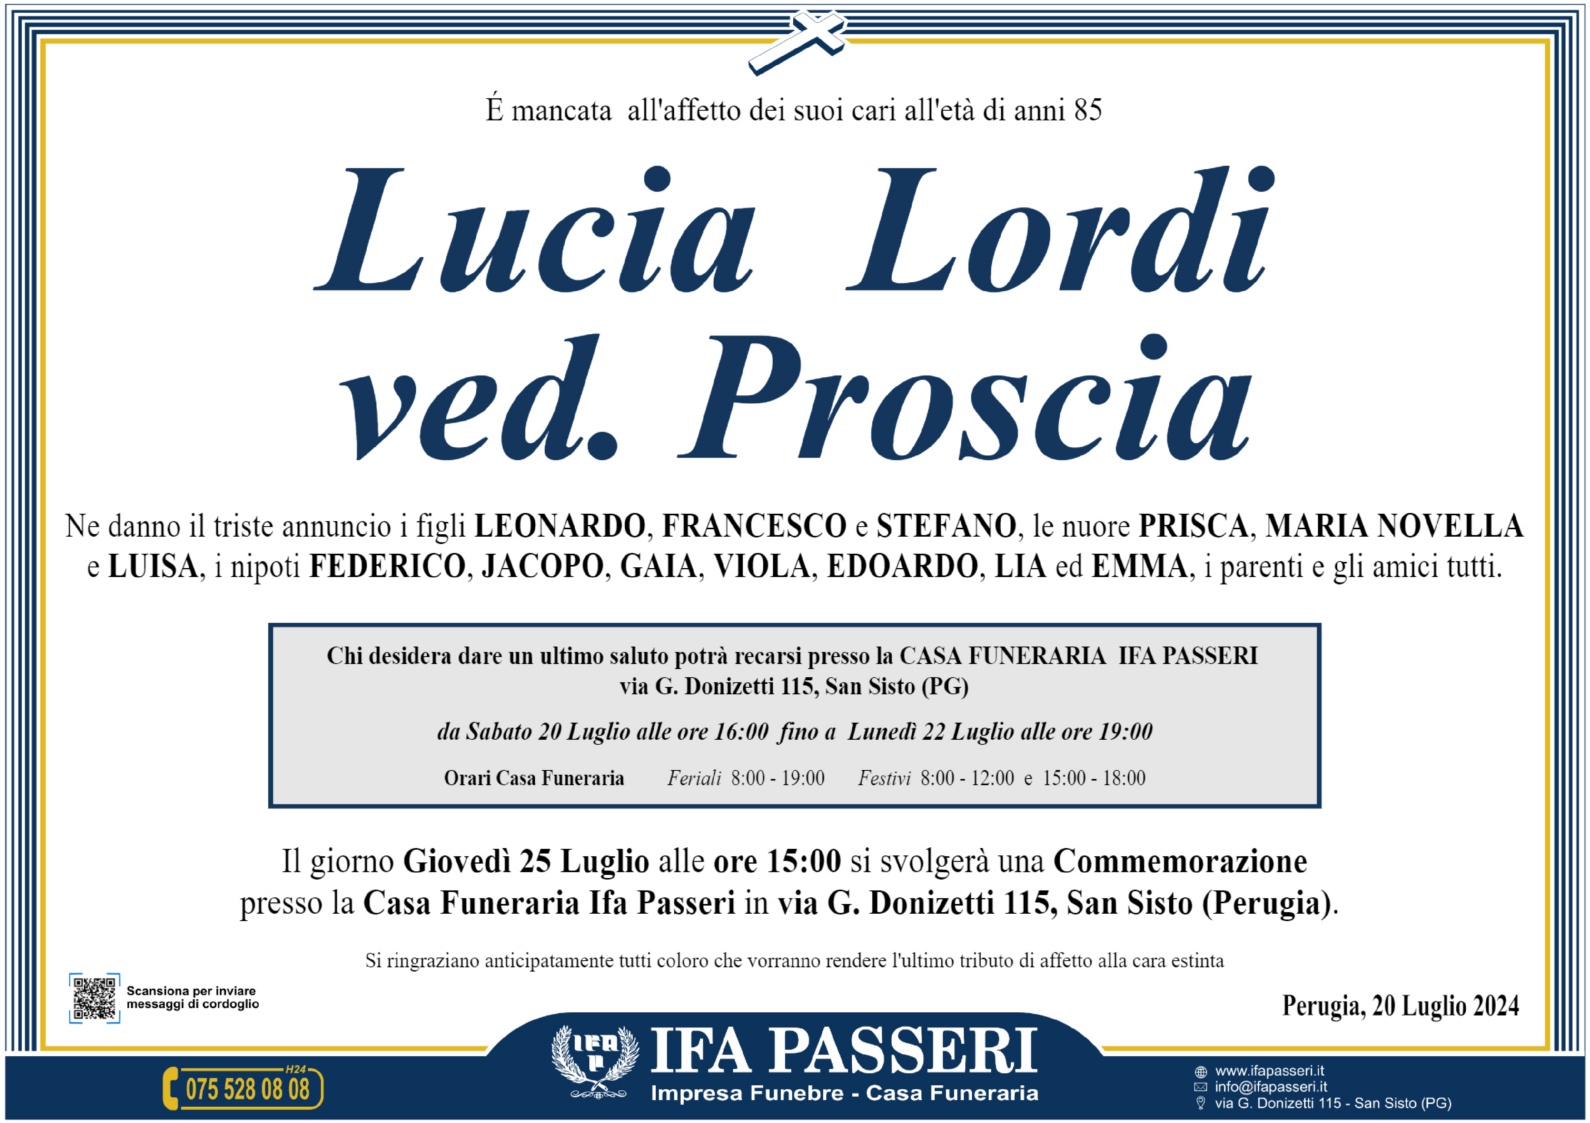 Lucia Lordi ved. Proscia